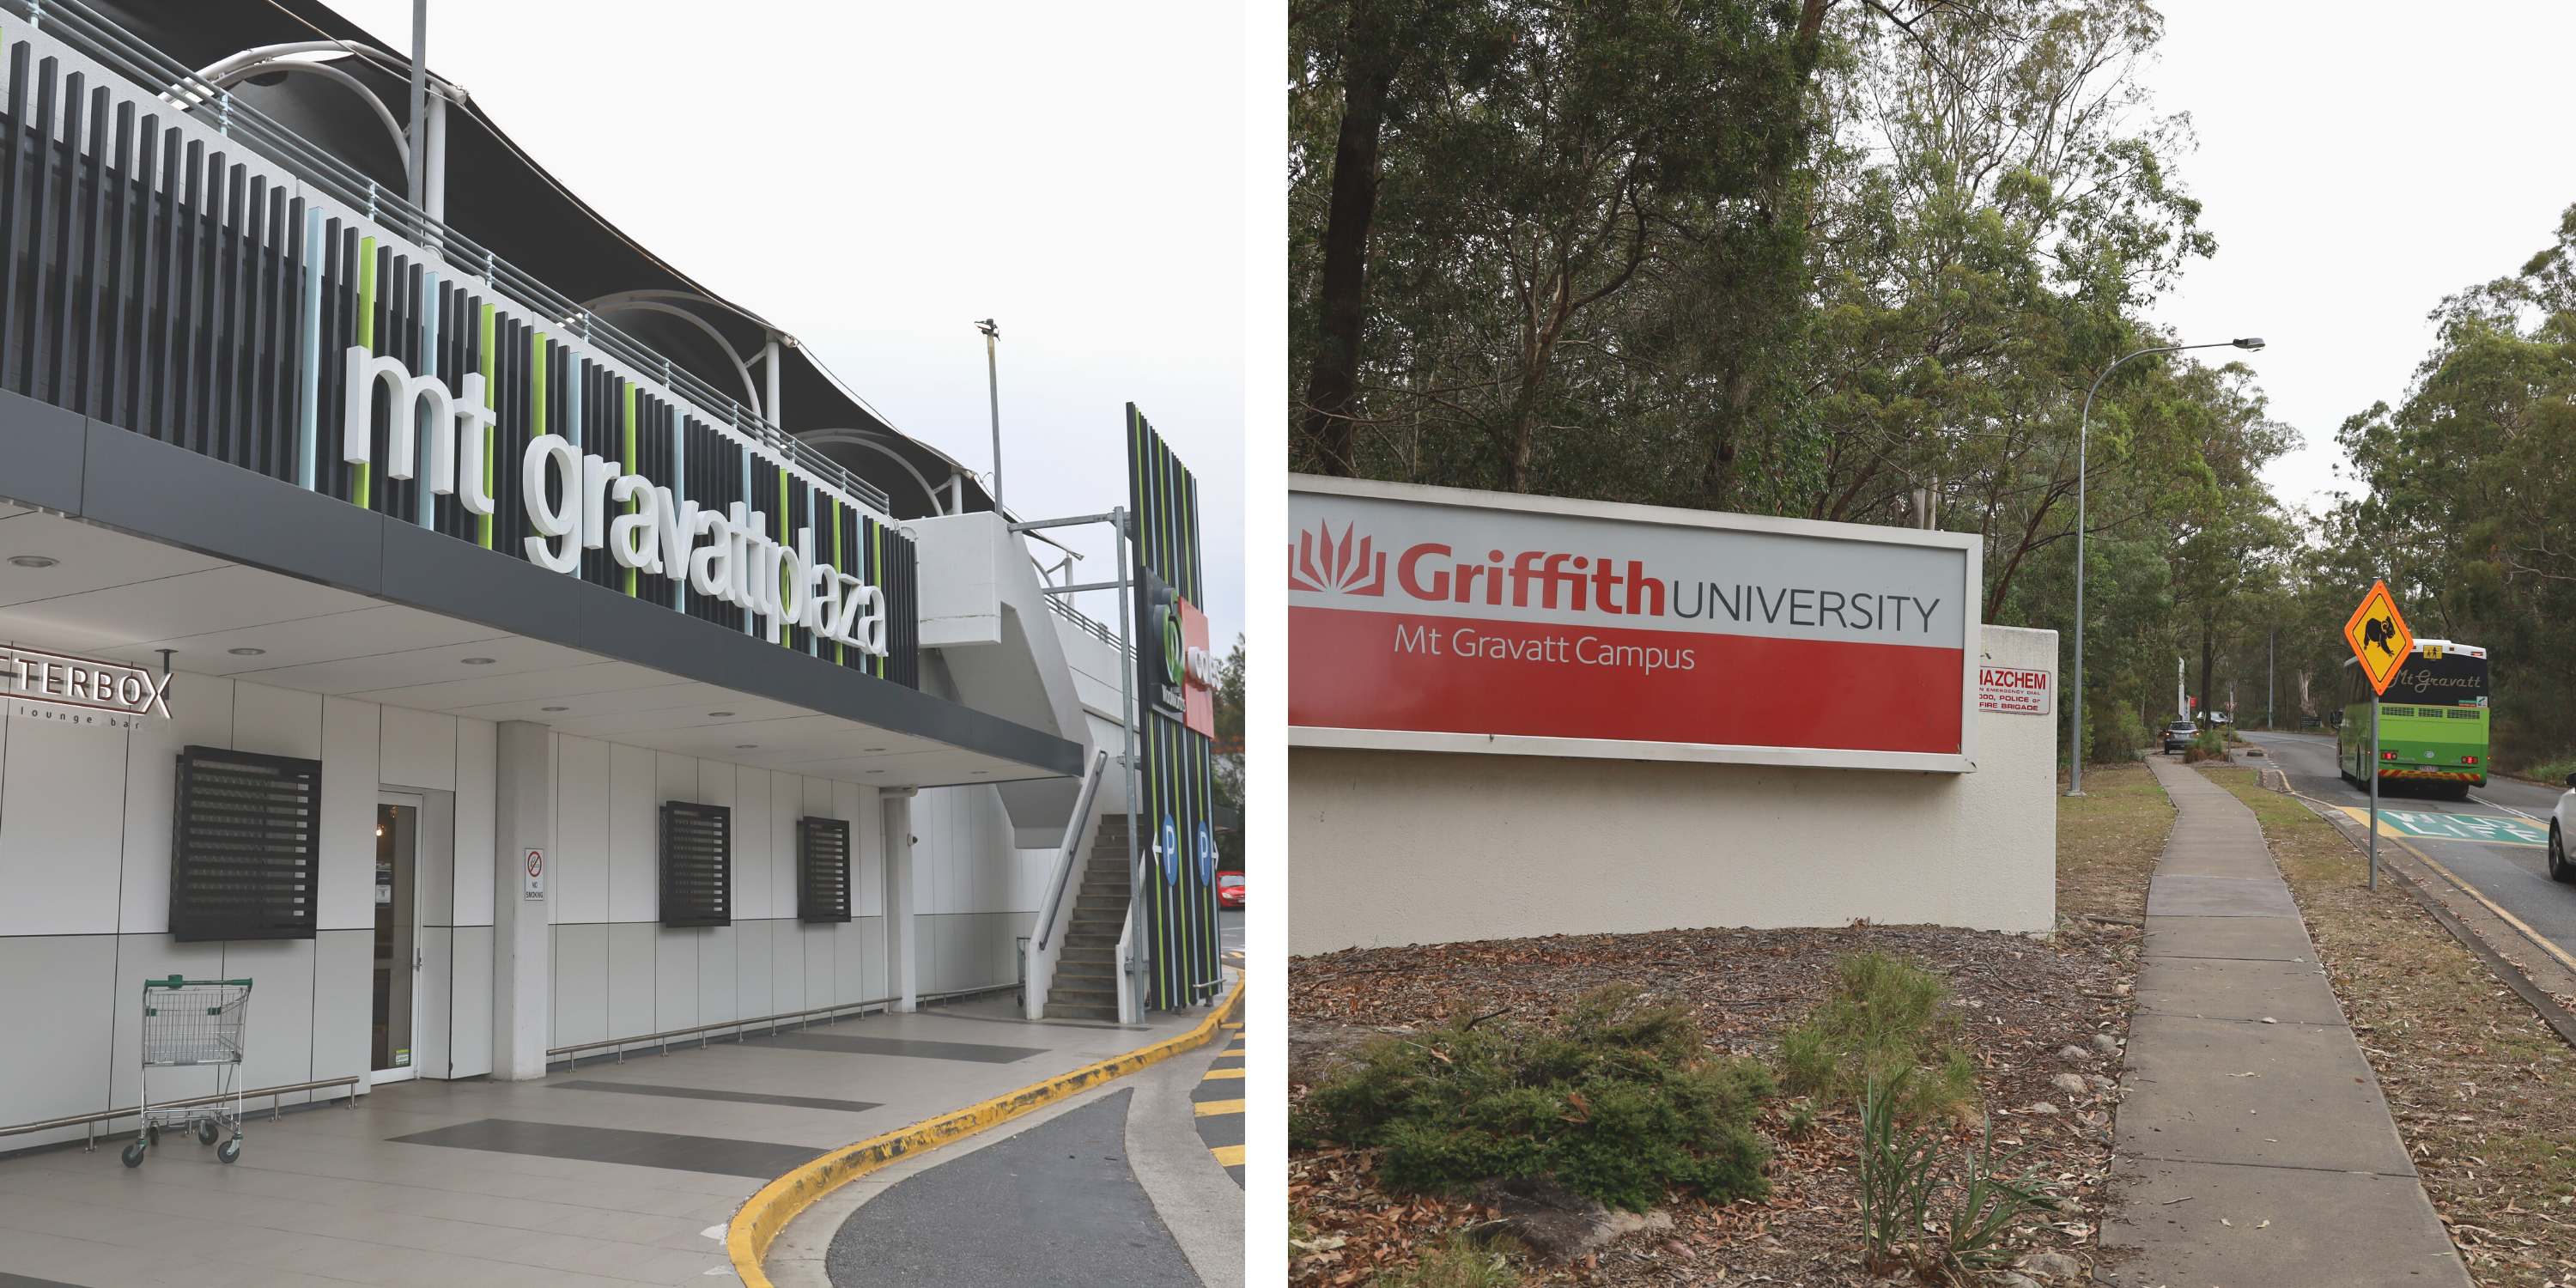 Mount Gravatt Plaza and Griffith University, Mount Gravatt